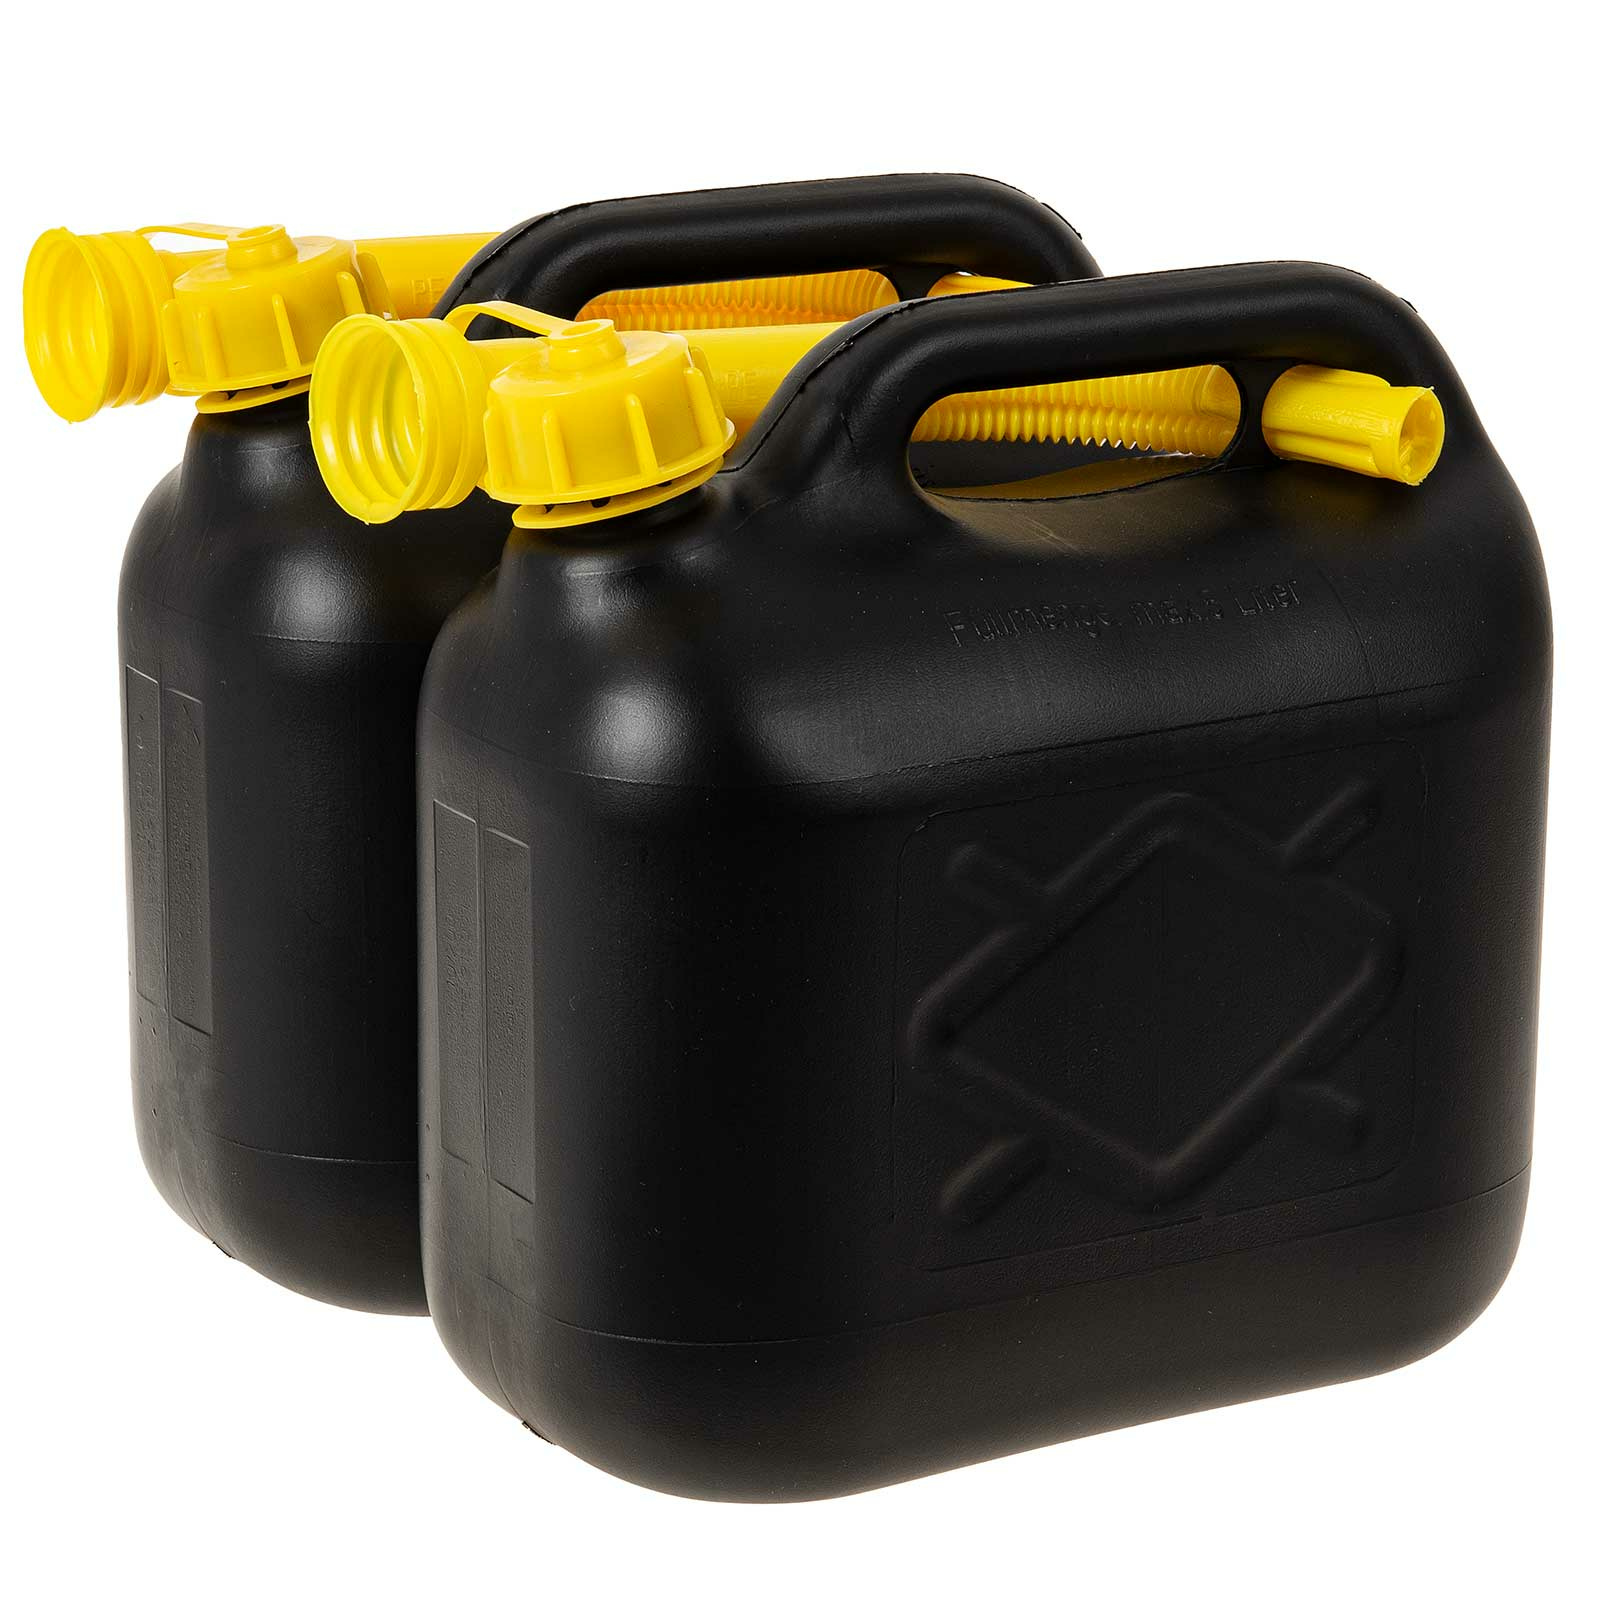 https://www.sidco.de/media/image/product/9658/lg/2-benzinkanister-5-liter.jpg